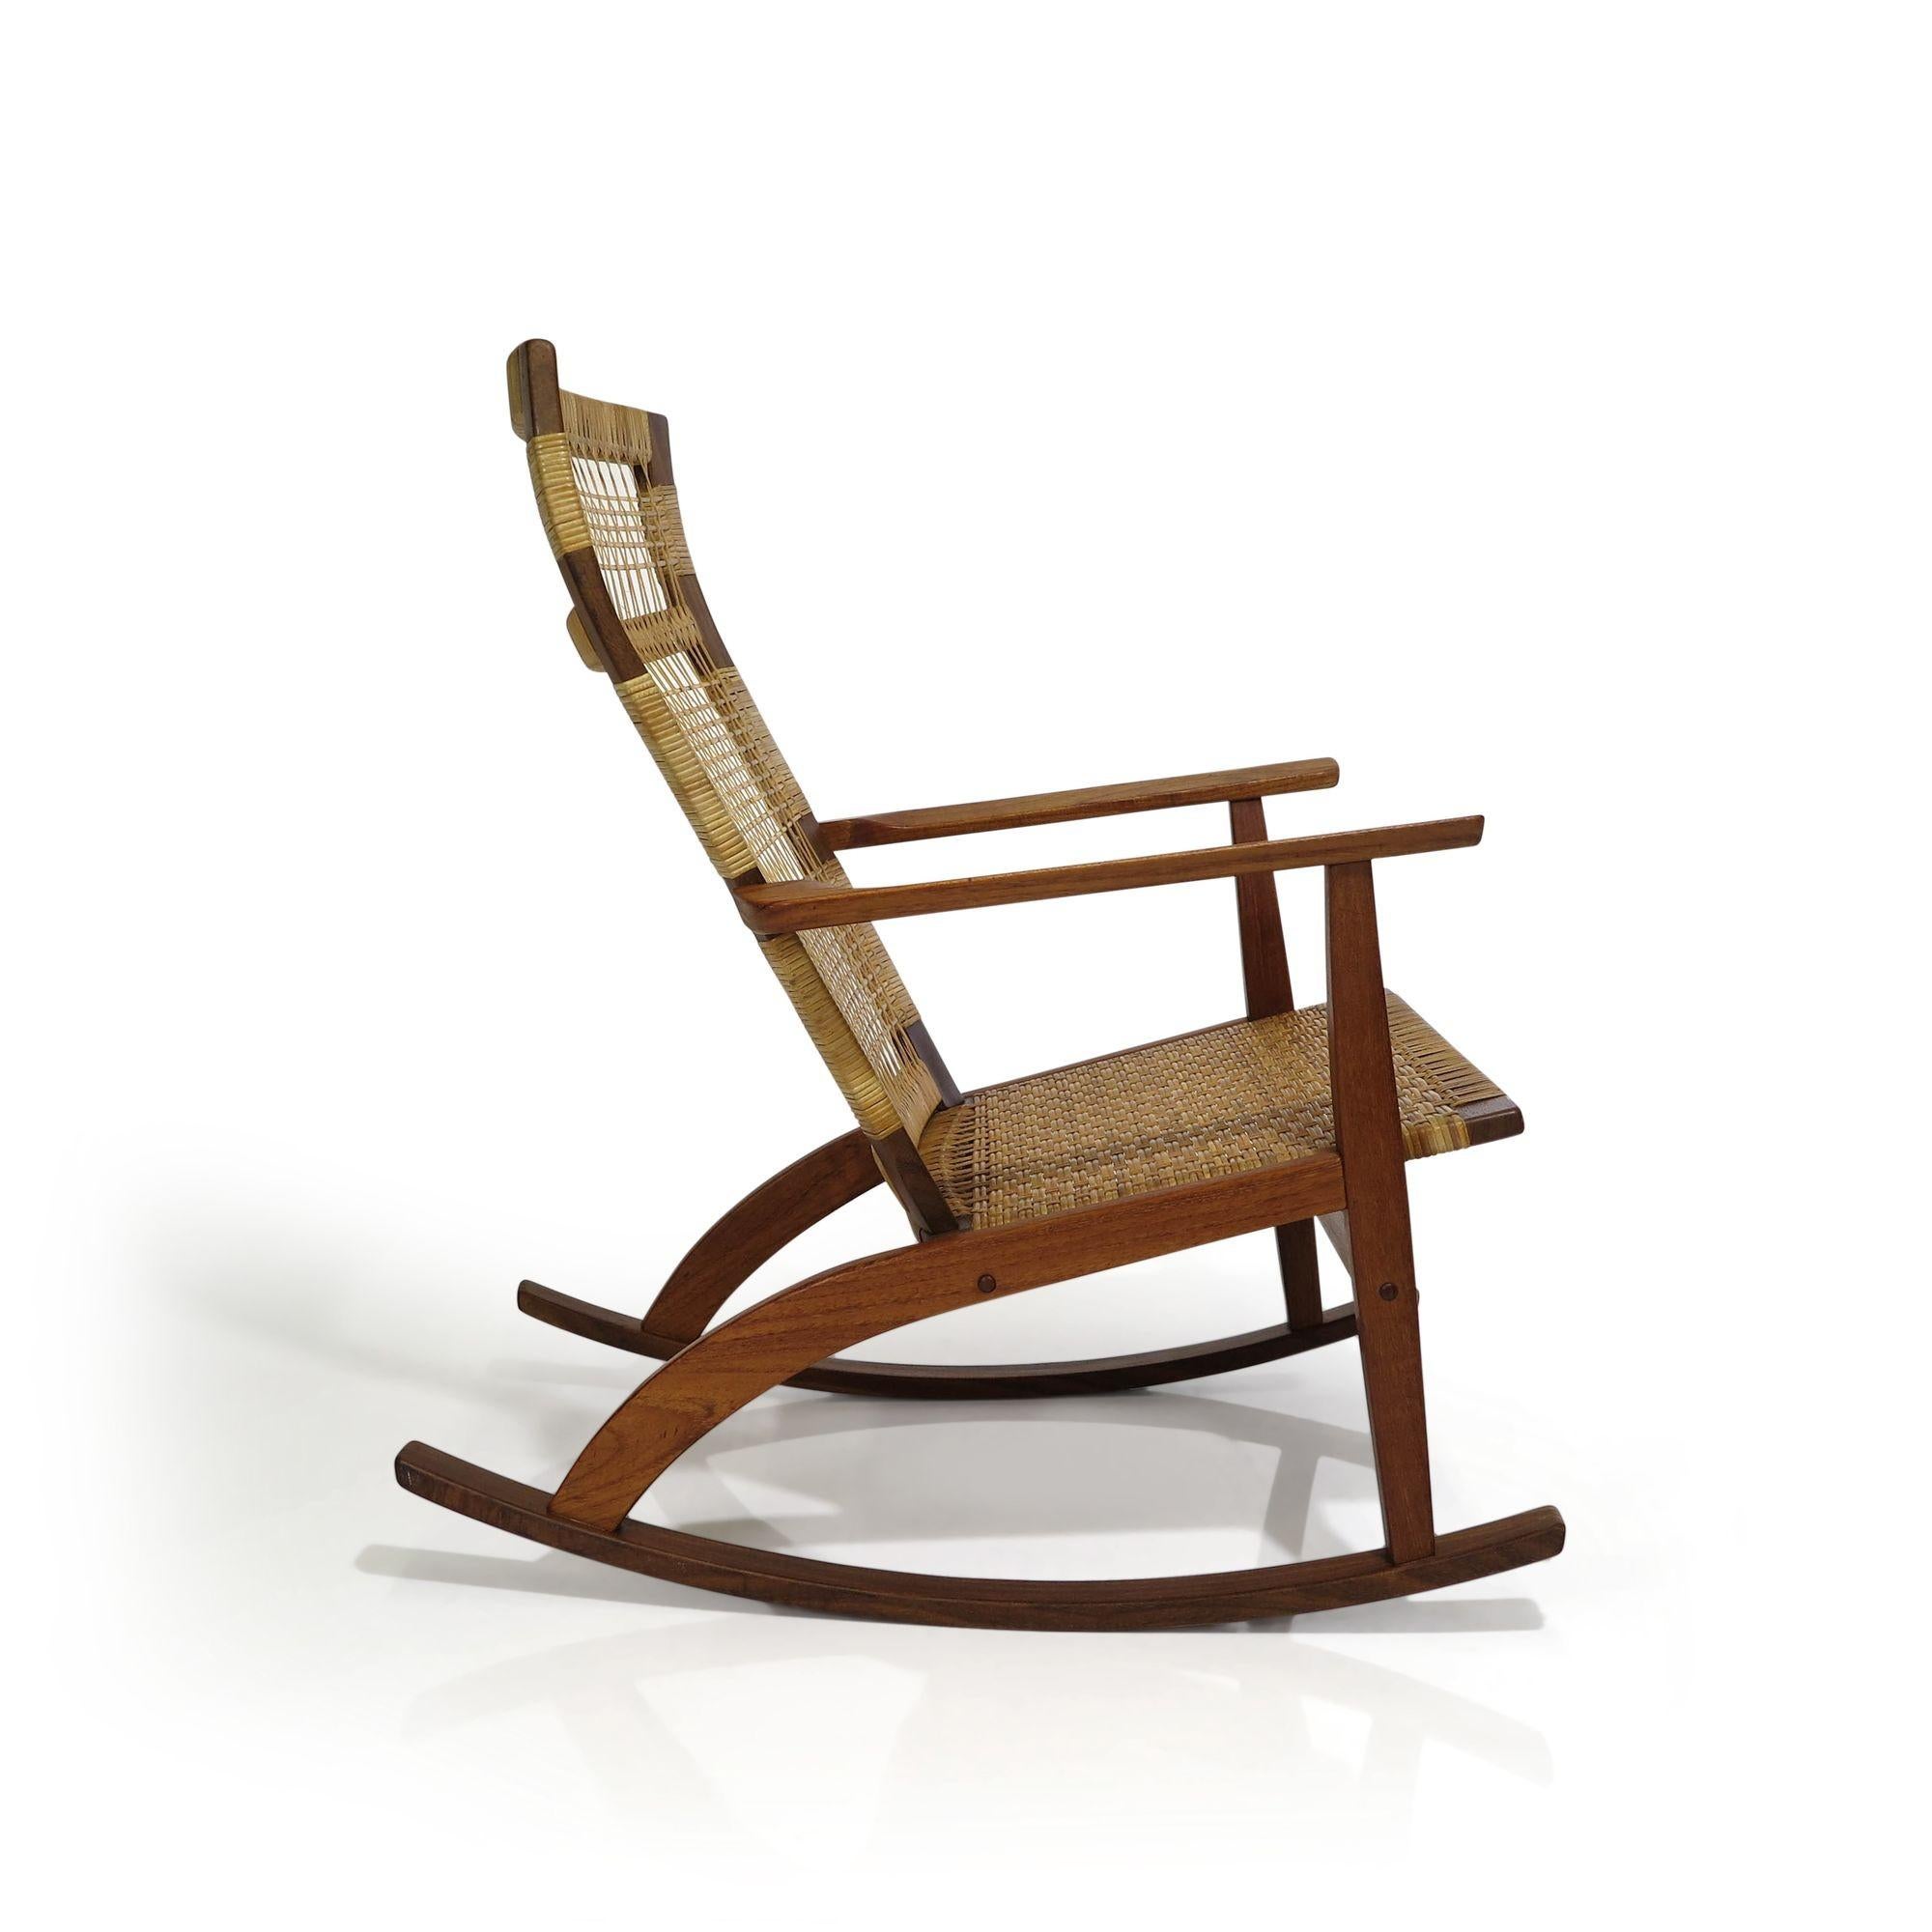 Fauteuil à bascule danois en teck conçu par Hans Olsen pour Juul Kristensen, 1955, Danemark. La chaise est fabriquée en teck massif avec une assise et un dossier en rotin tressé. La chaise a été légèrement nettoyée et huilée.
Mesures
L 25,25'' x D